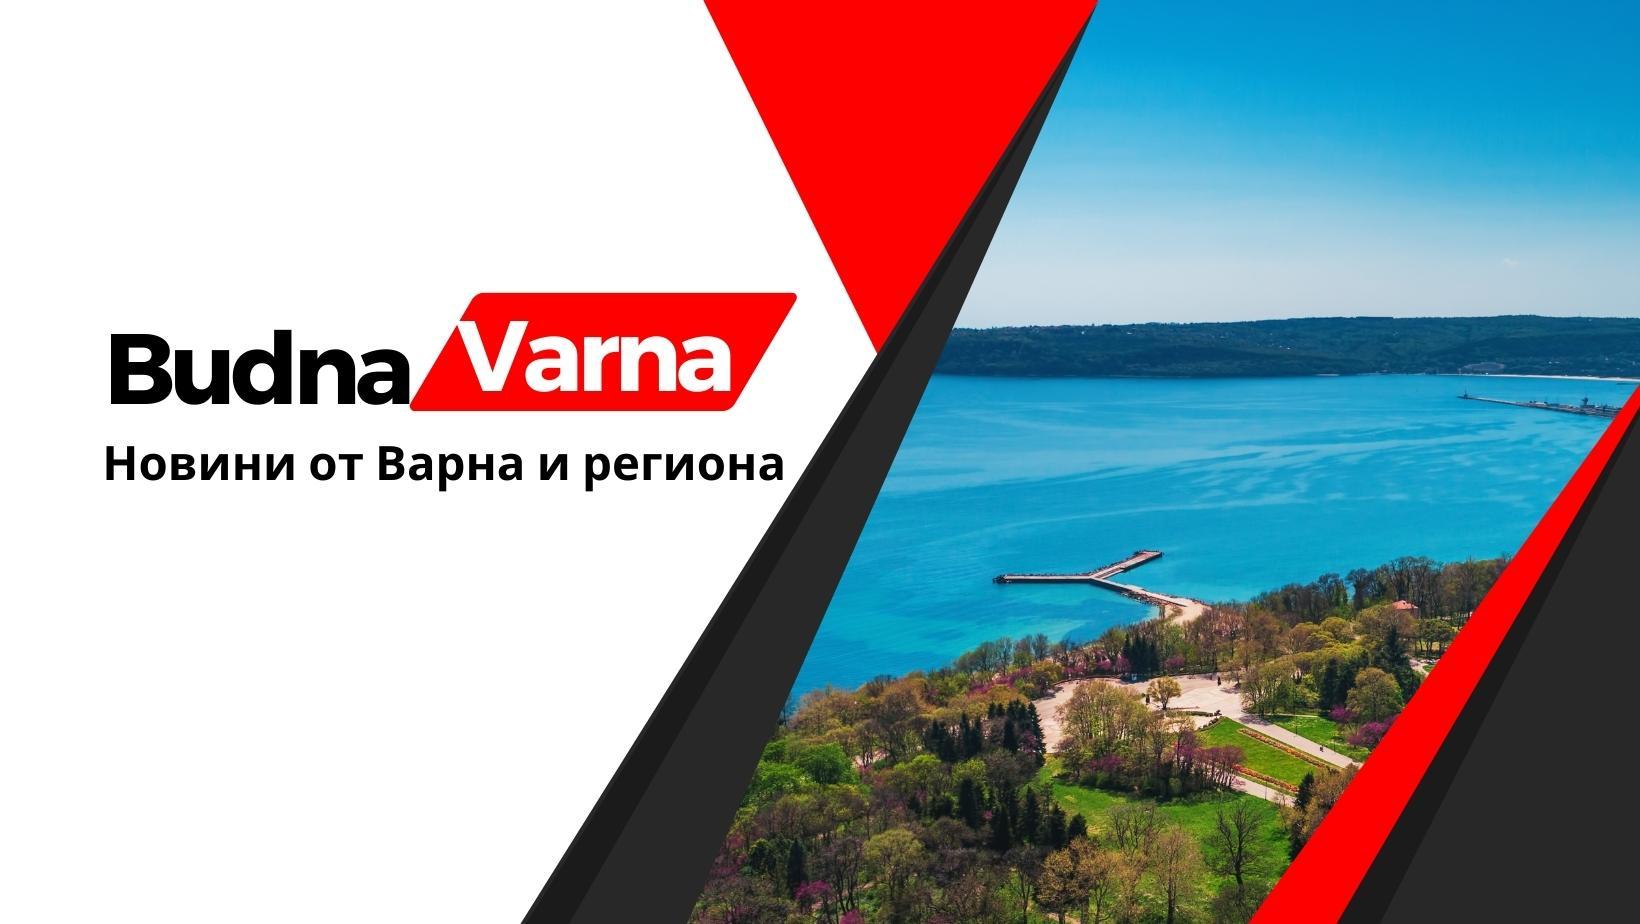 Будна Варна - новини от Варна и региона